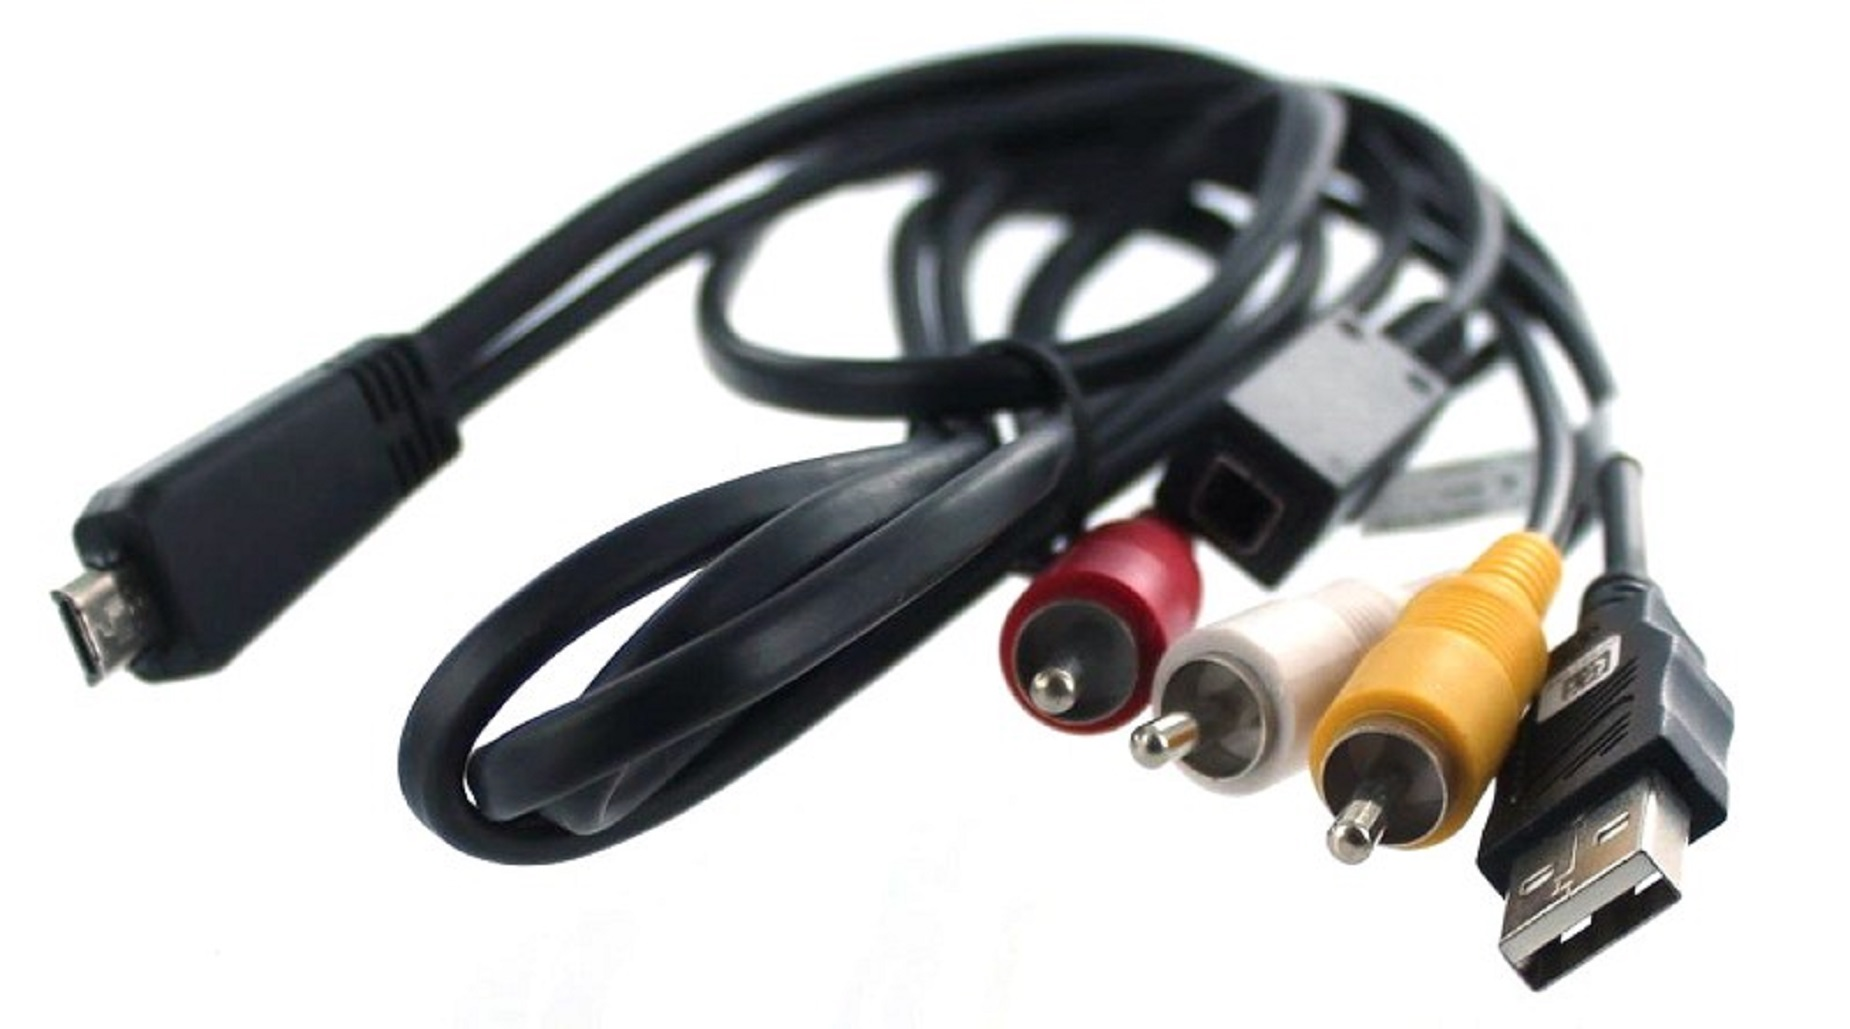 Sony DSC-HX7V schwarz mit kompatibel MOBILOTEC Zubehör USB-/AV-Verbindungskabel Sony,